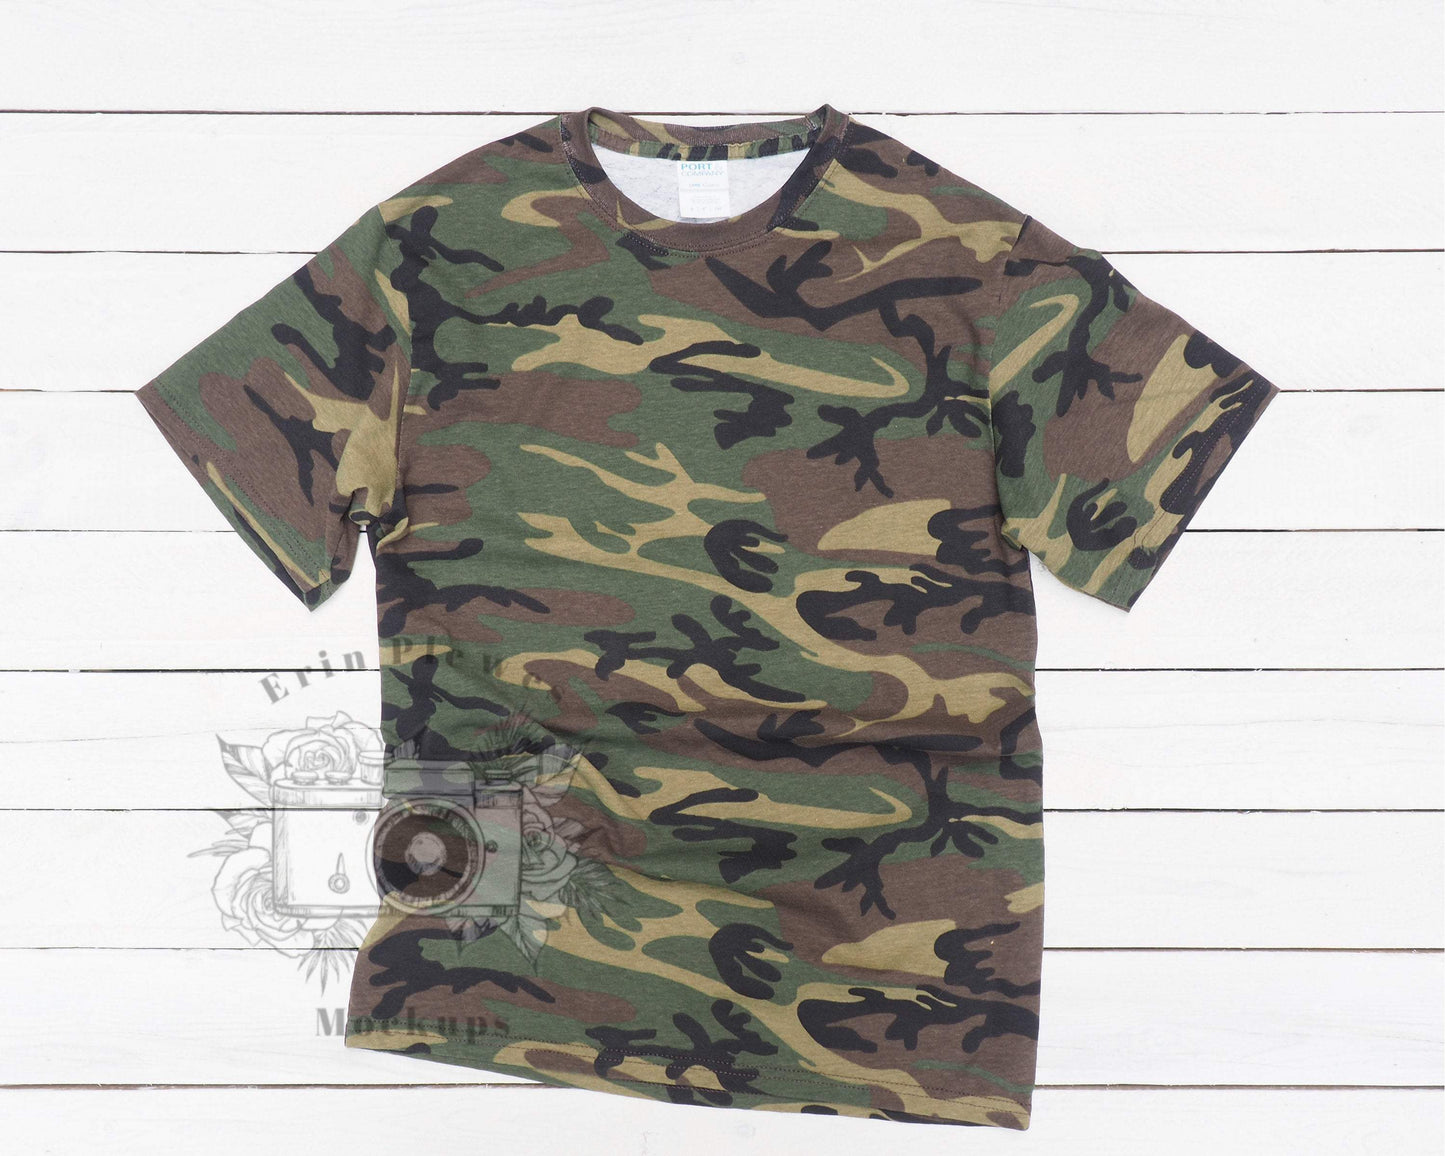 Camo T Shirt Mockup, Military Camo Tshirt Mockup for Lifestyle Stock P ...